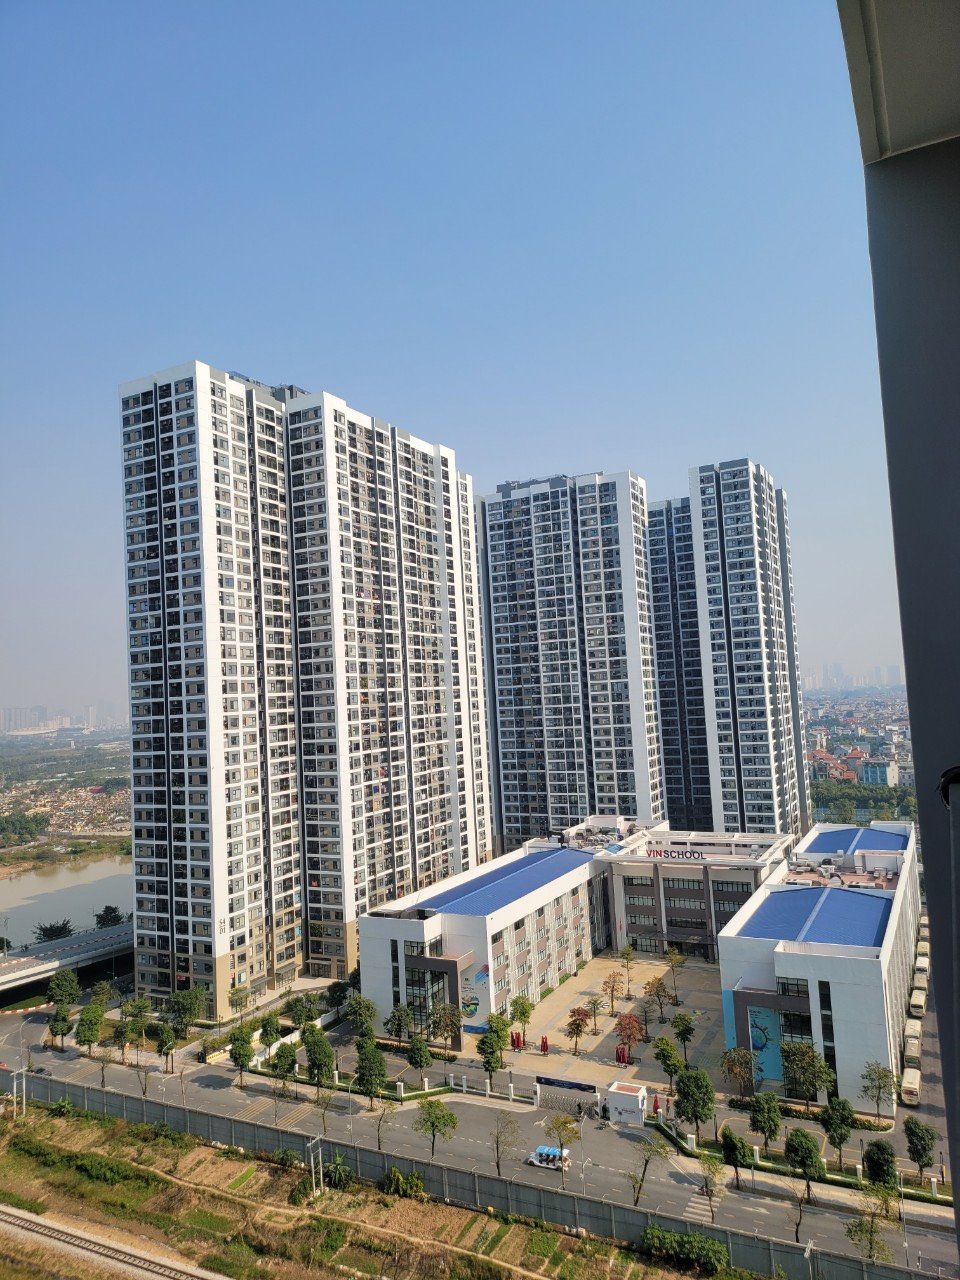 [Cho Thuê] Căn hộ 2PN1VS GS3 tầng trung - View Nội khu Vinhomes Smart City Tây Mỗ 7